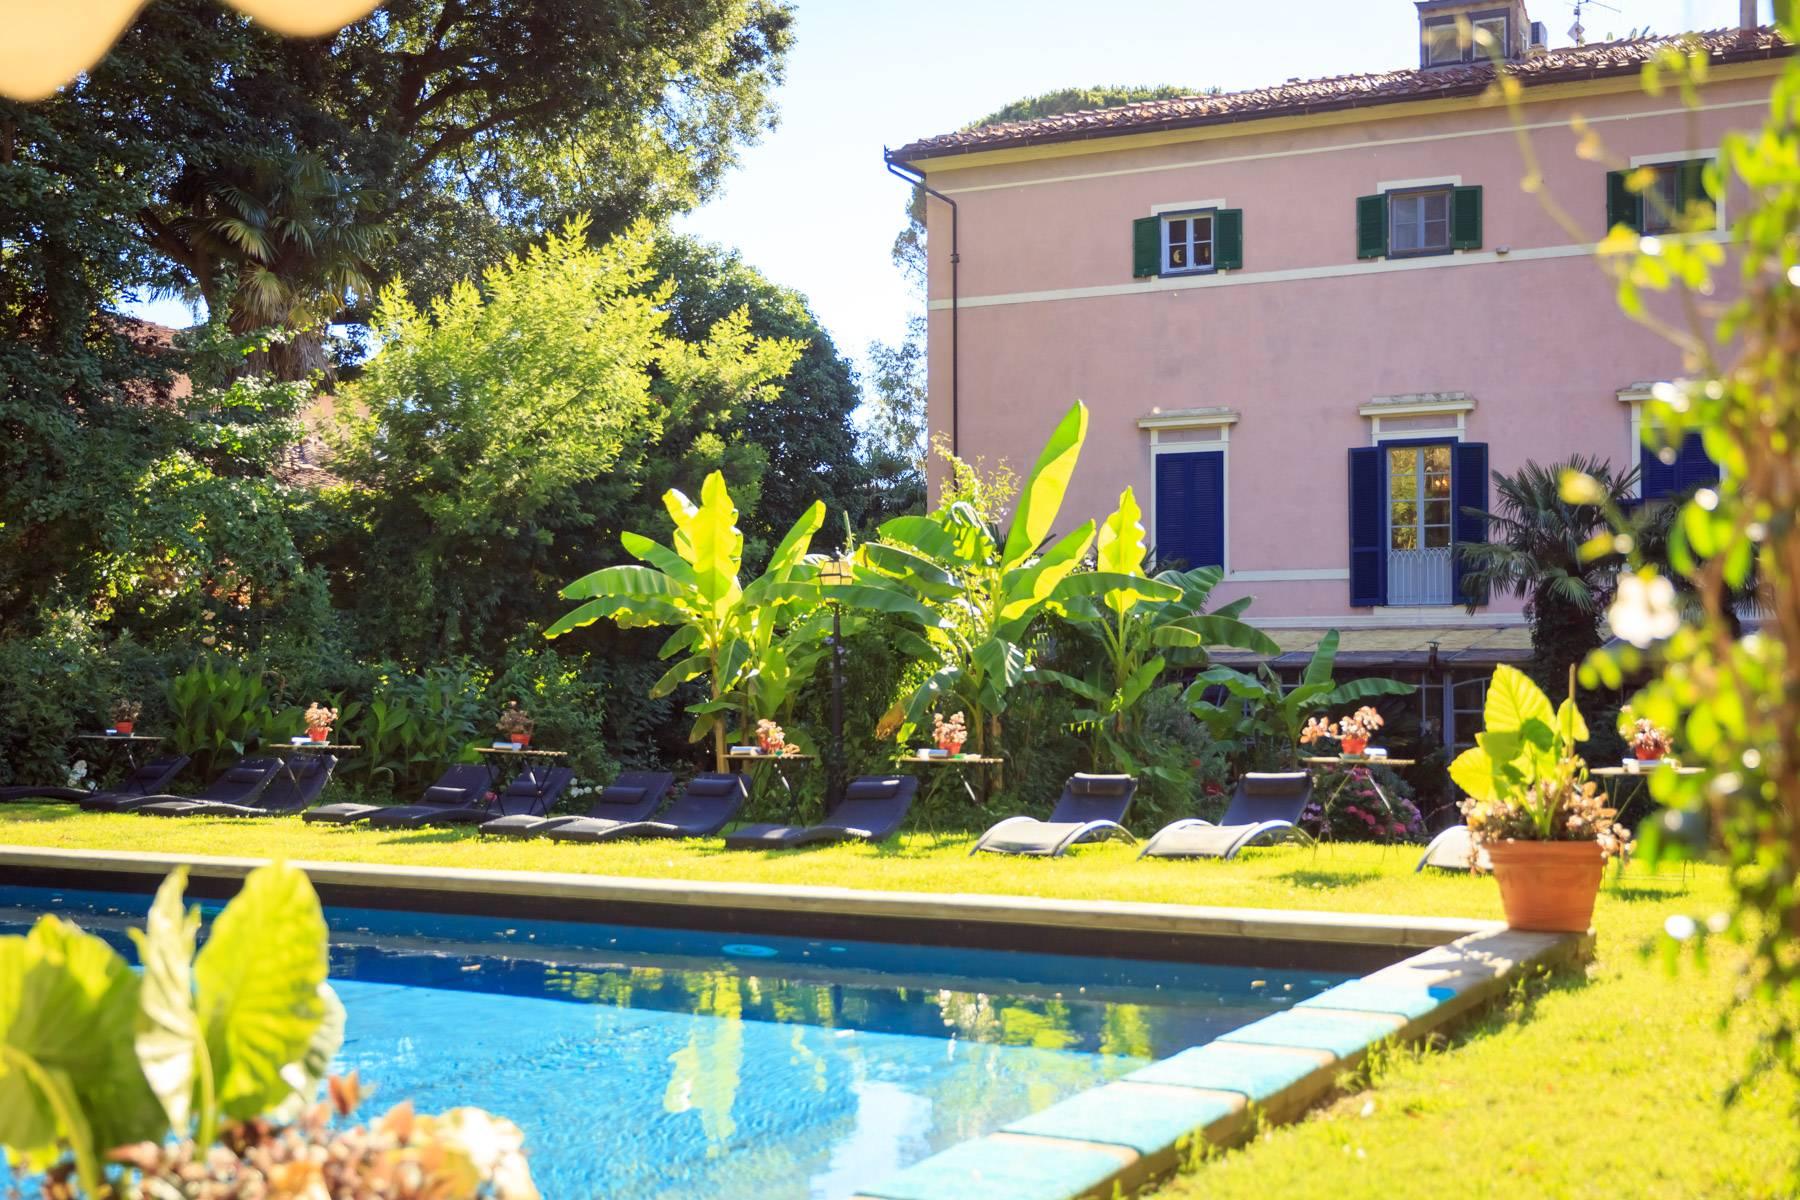 Romantica villa in vendita a Pisa - 4